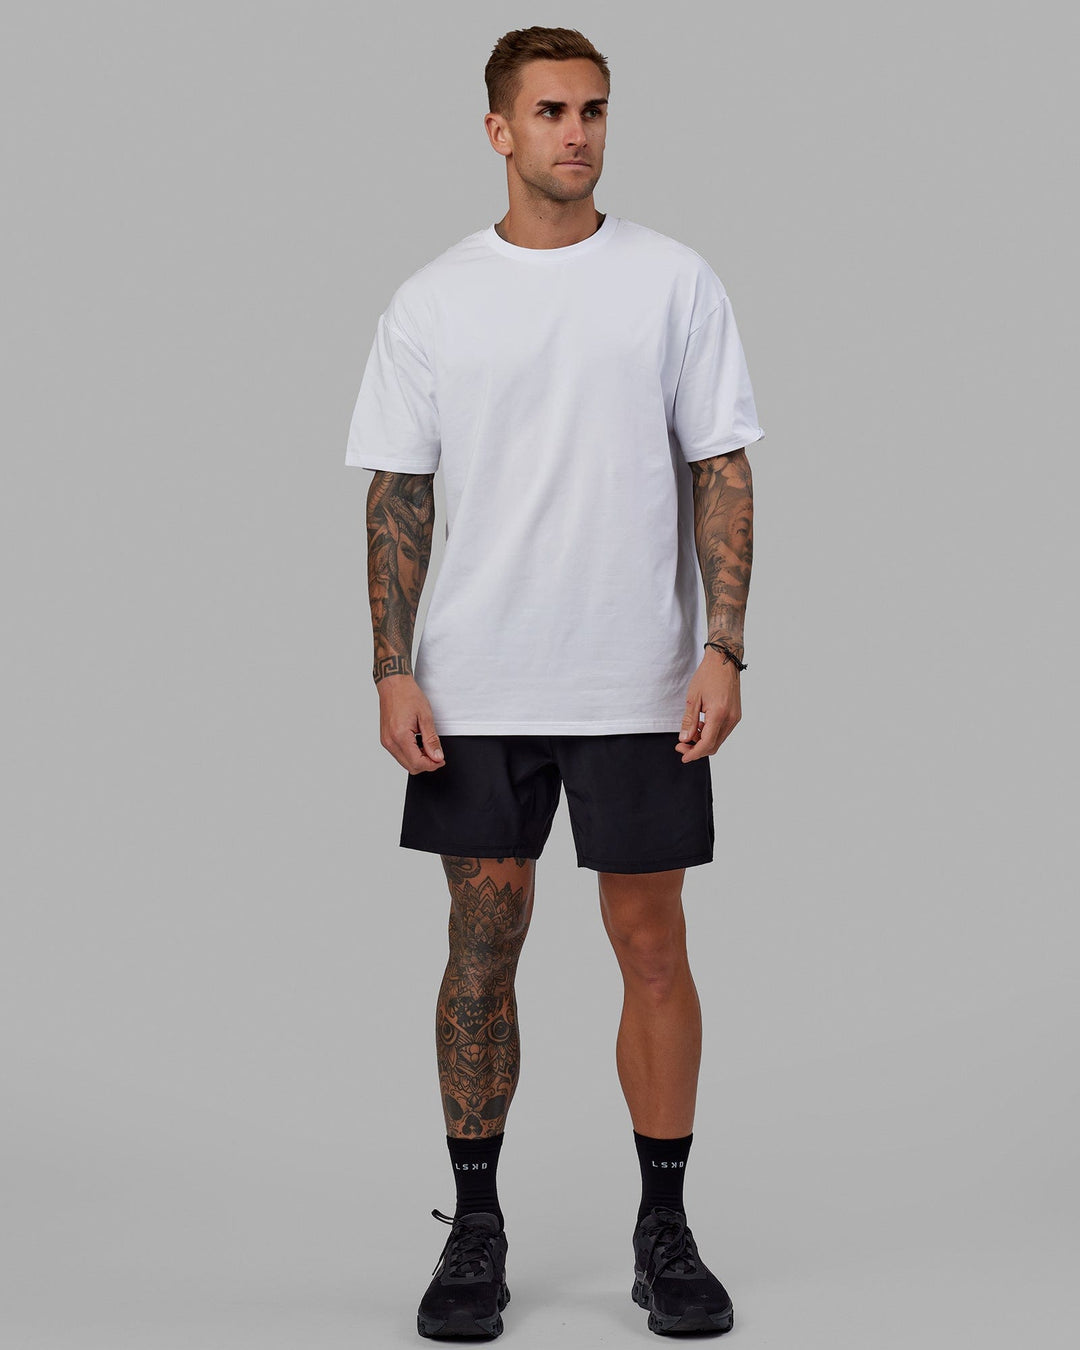 Man wearing Unisex Love The Run FLXCotton Tee Oversize - White-Black